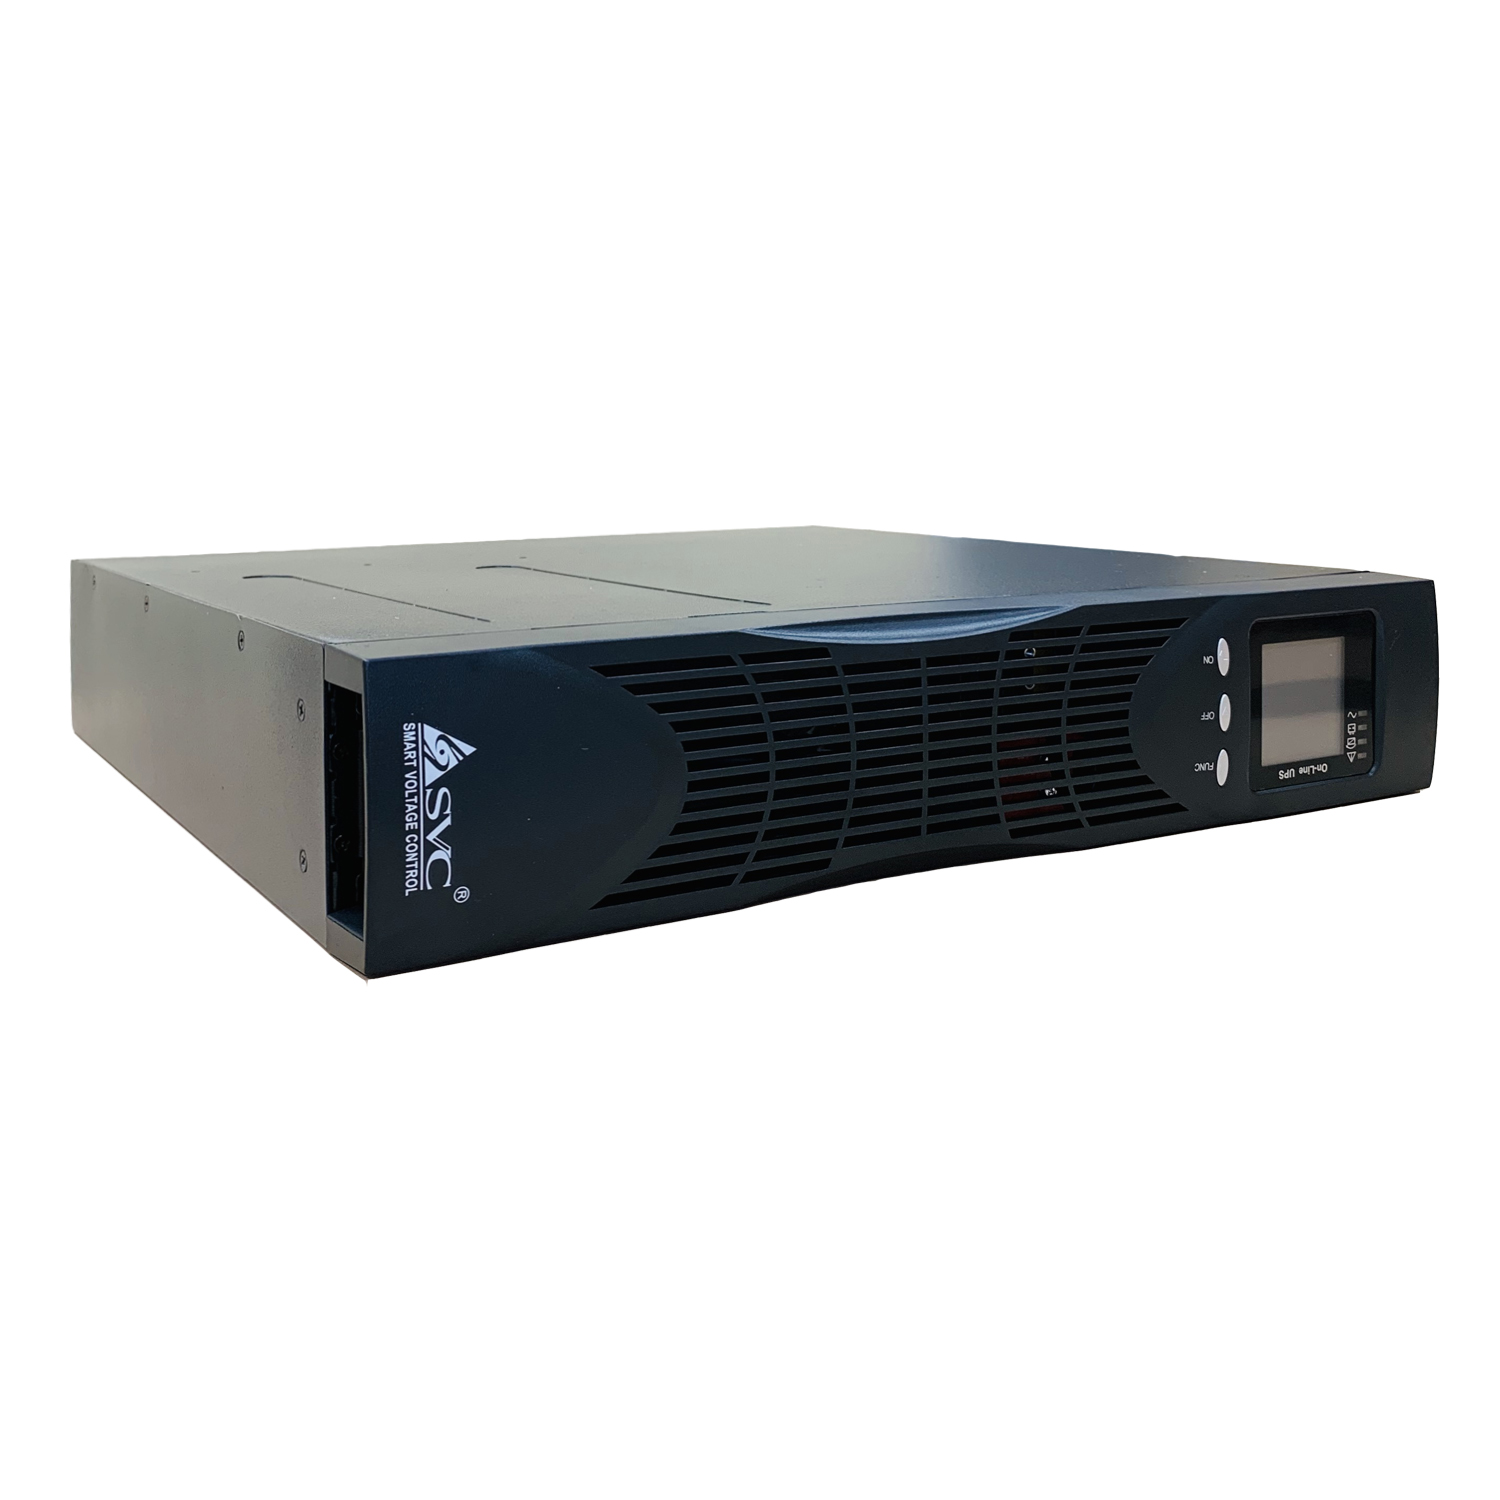 ИБП SVC TRX11-2KL-LCD/AS09SC, 2000VA, 1800W, EURO, розеток - 2, USB, черный (TRX11-2KL-LCD/AS09SC)